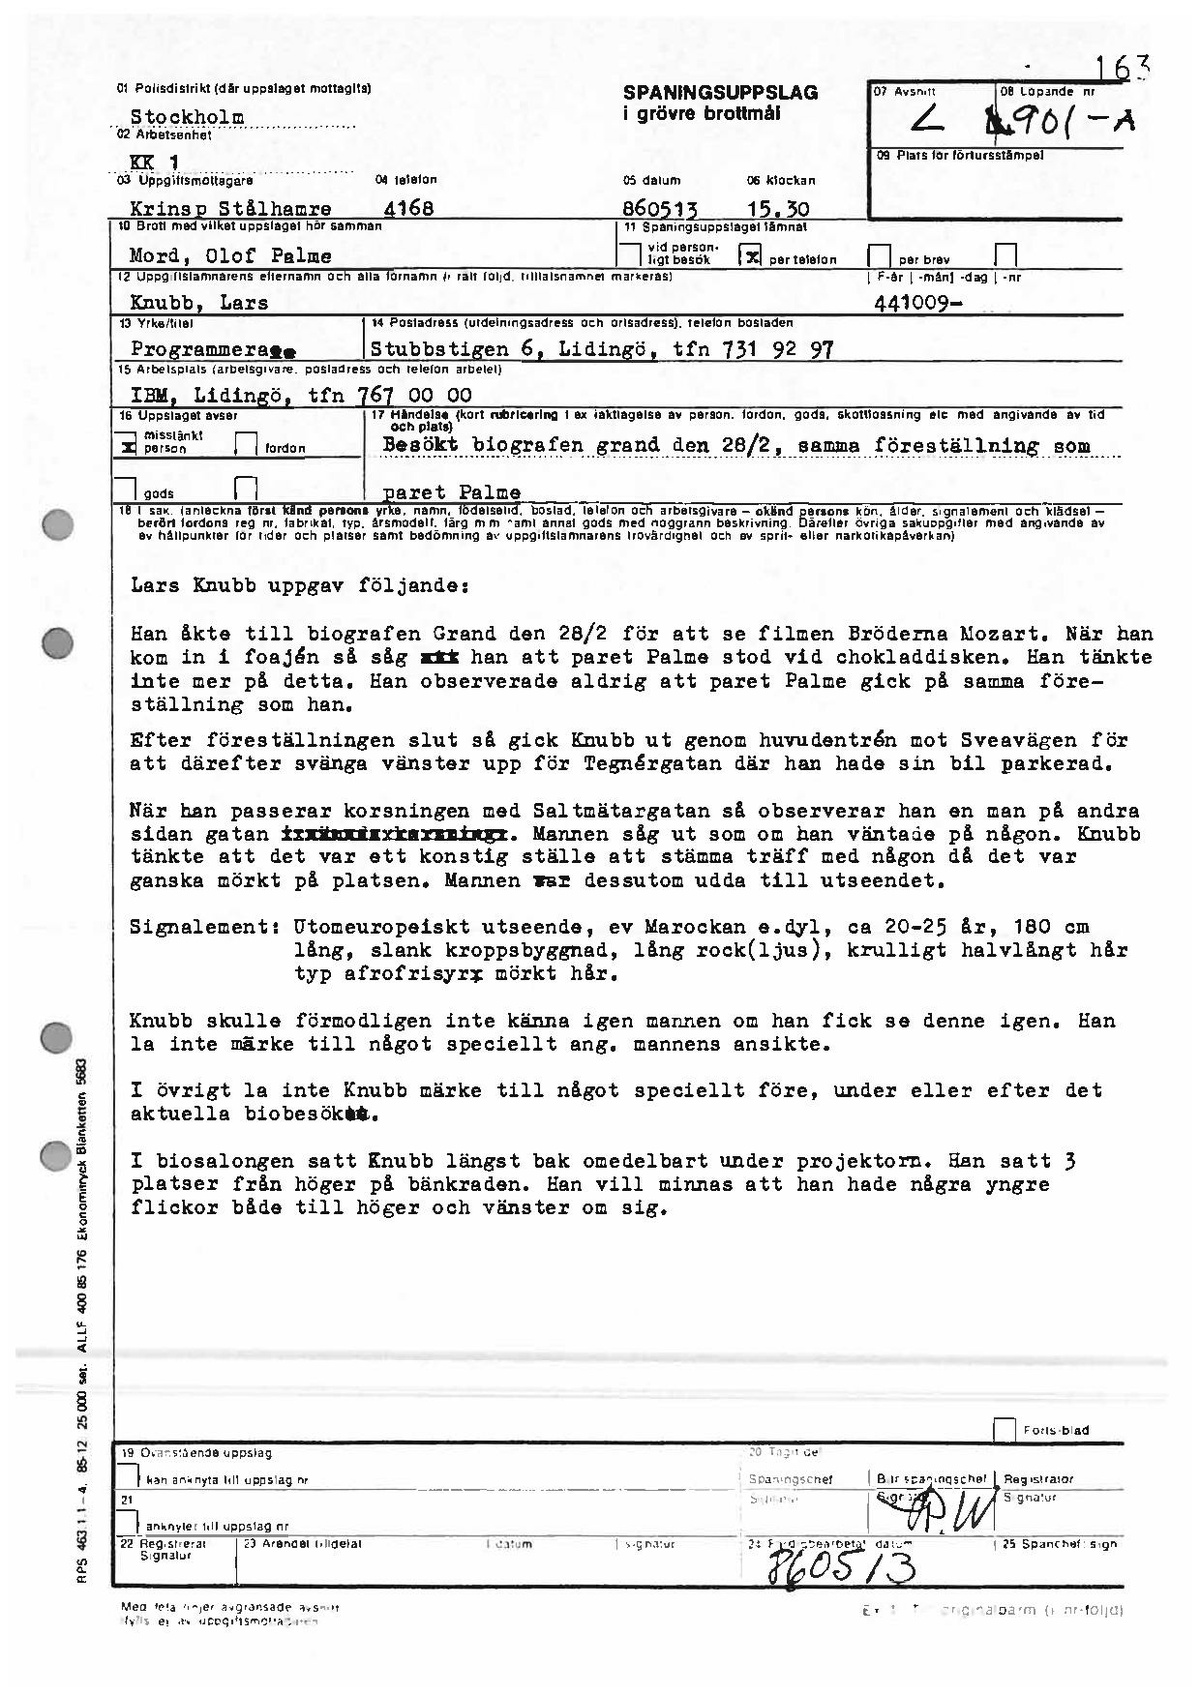 Pol-1986-05-13 1530 L901-00-A Lars Knubb fler detaljer om misstänkt mansperson.pdf